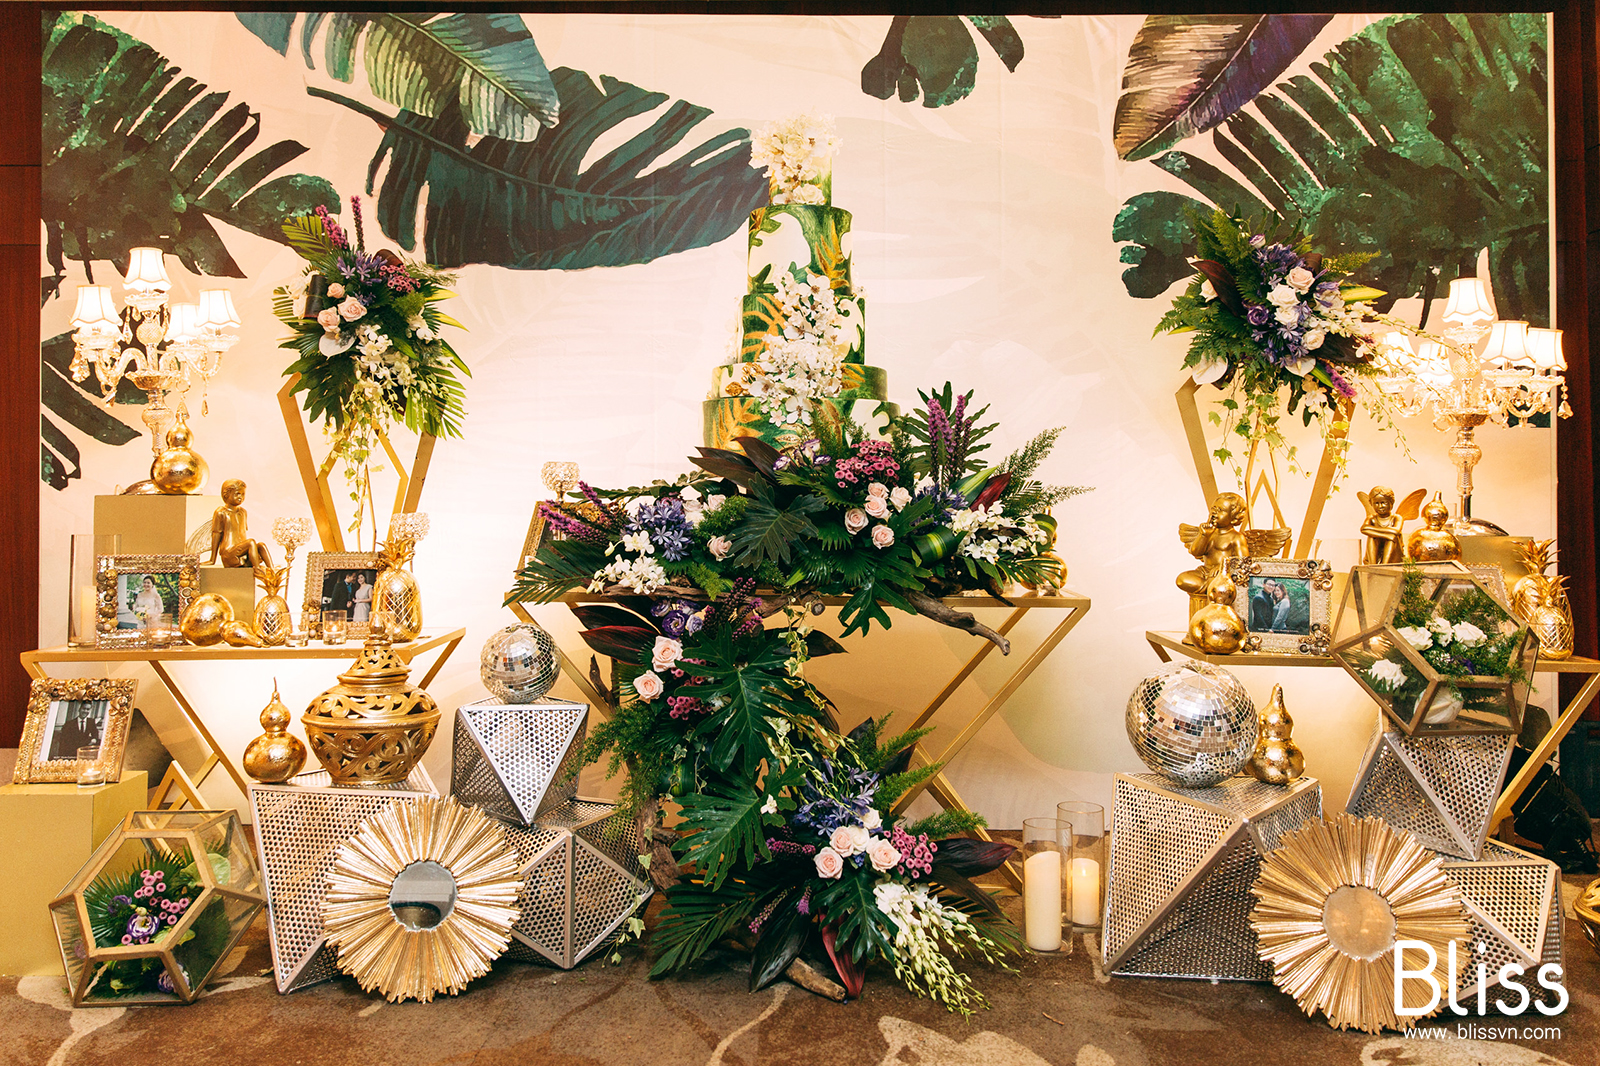 trang trí tiệc cưới tropical bliss wedding việt nam